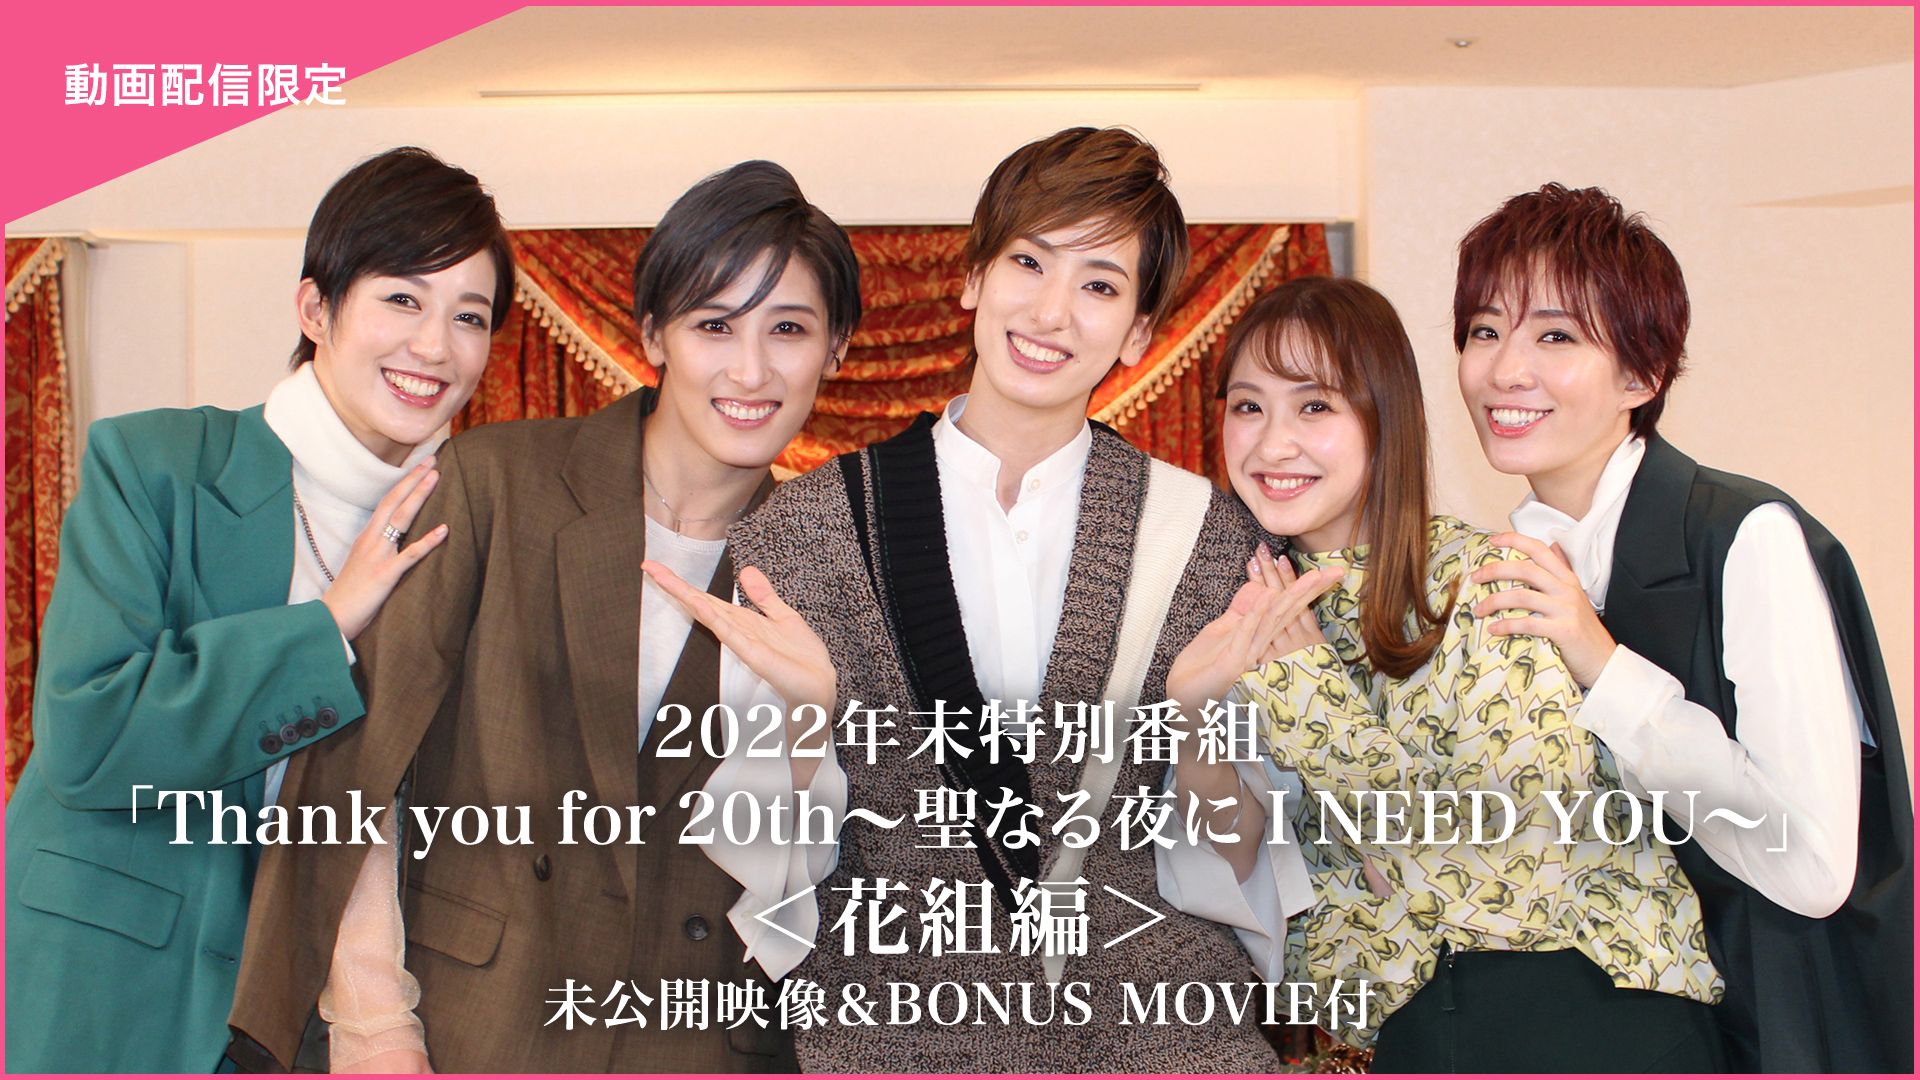 2022年末特別番組「Thank you for 20th〜聖なる夜に I NEED YOU〜」<花組編>未公開映像&BONUS MOVIE付